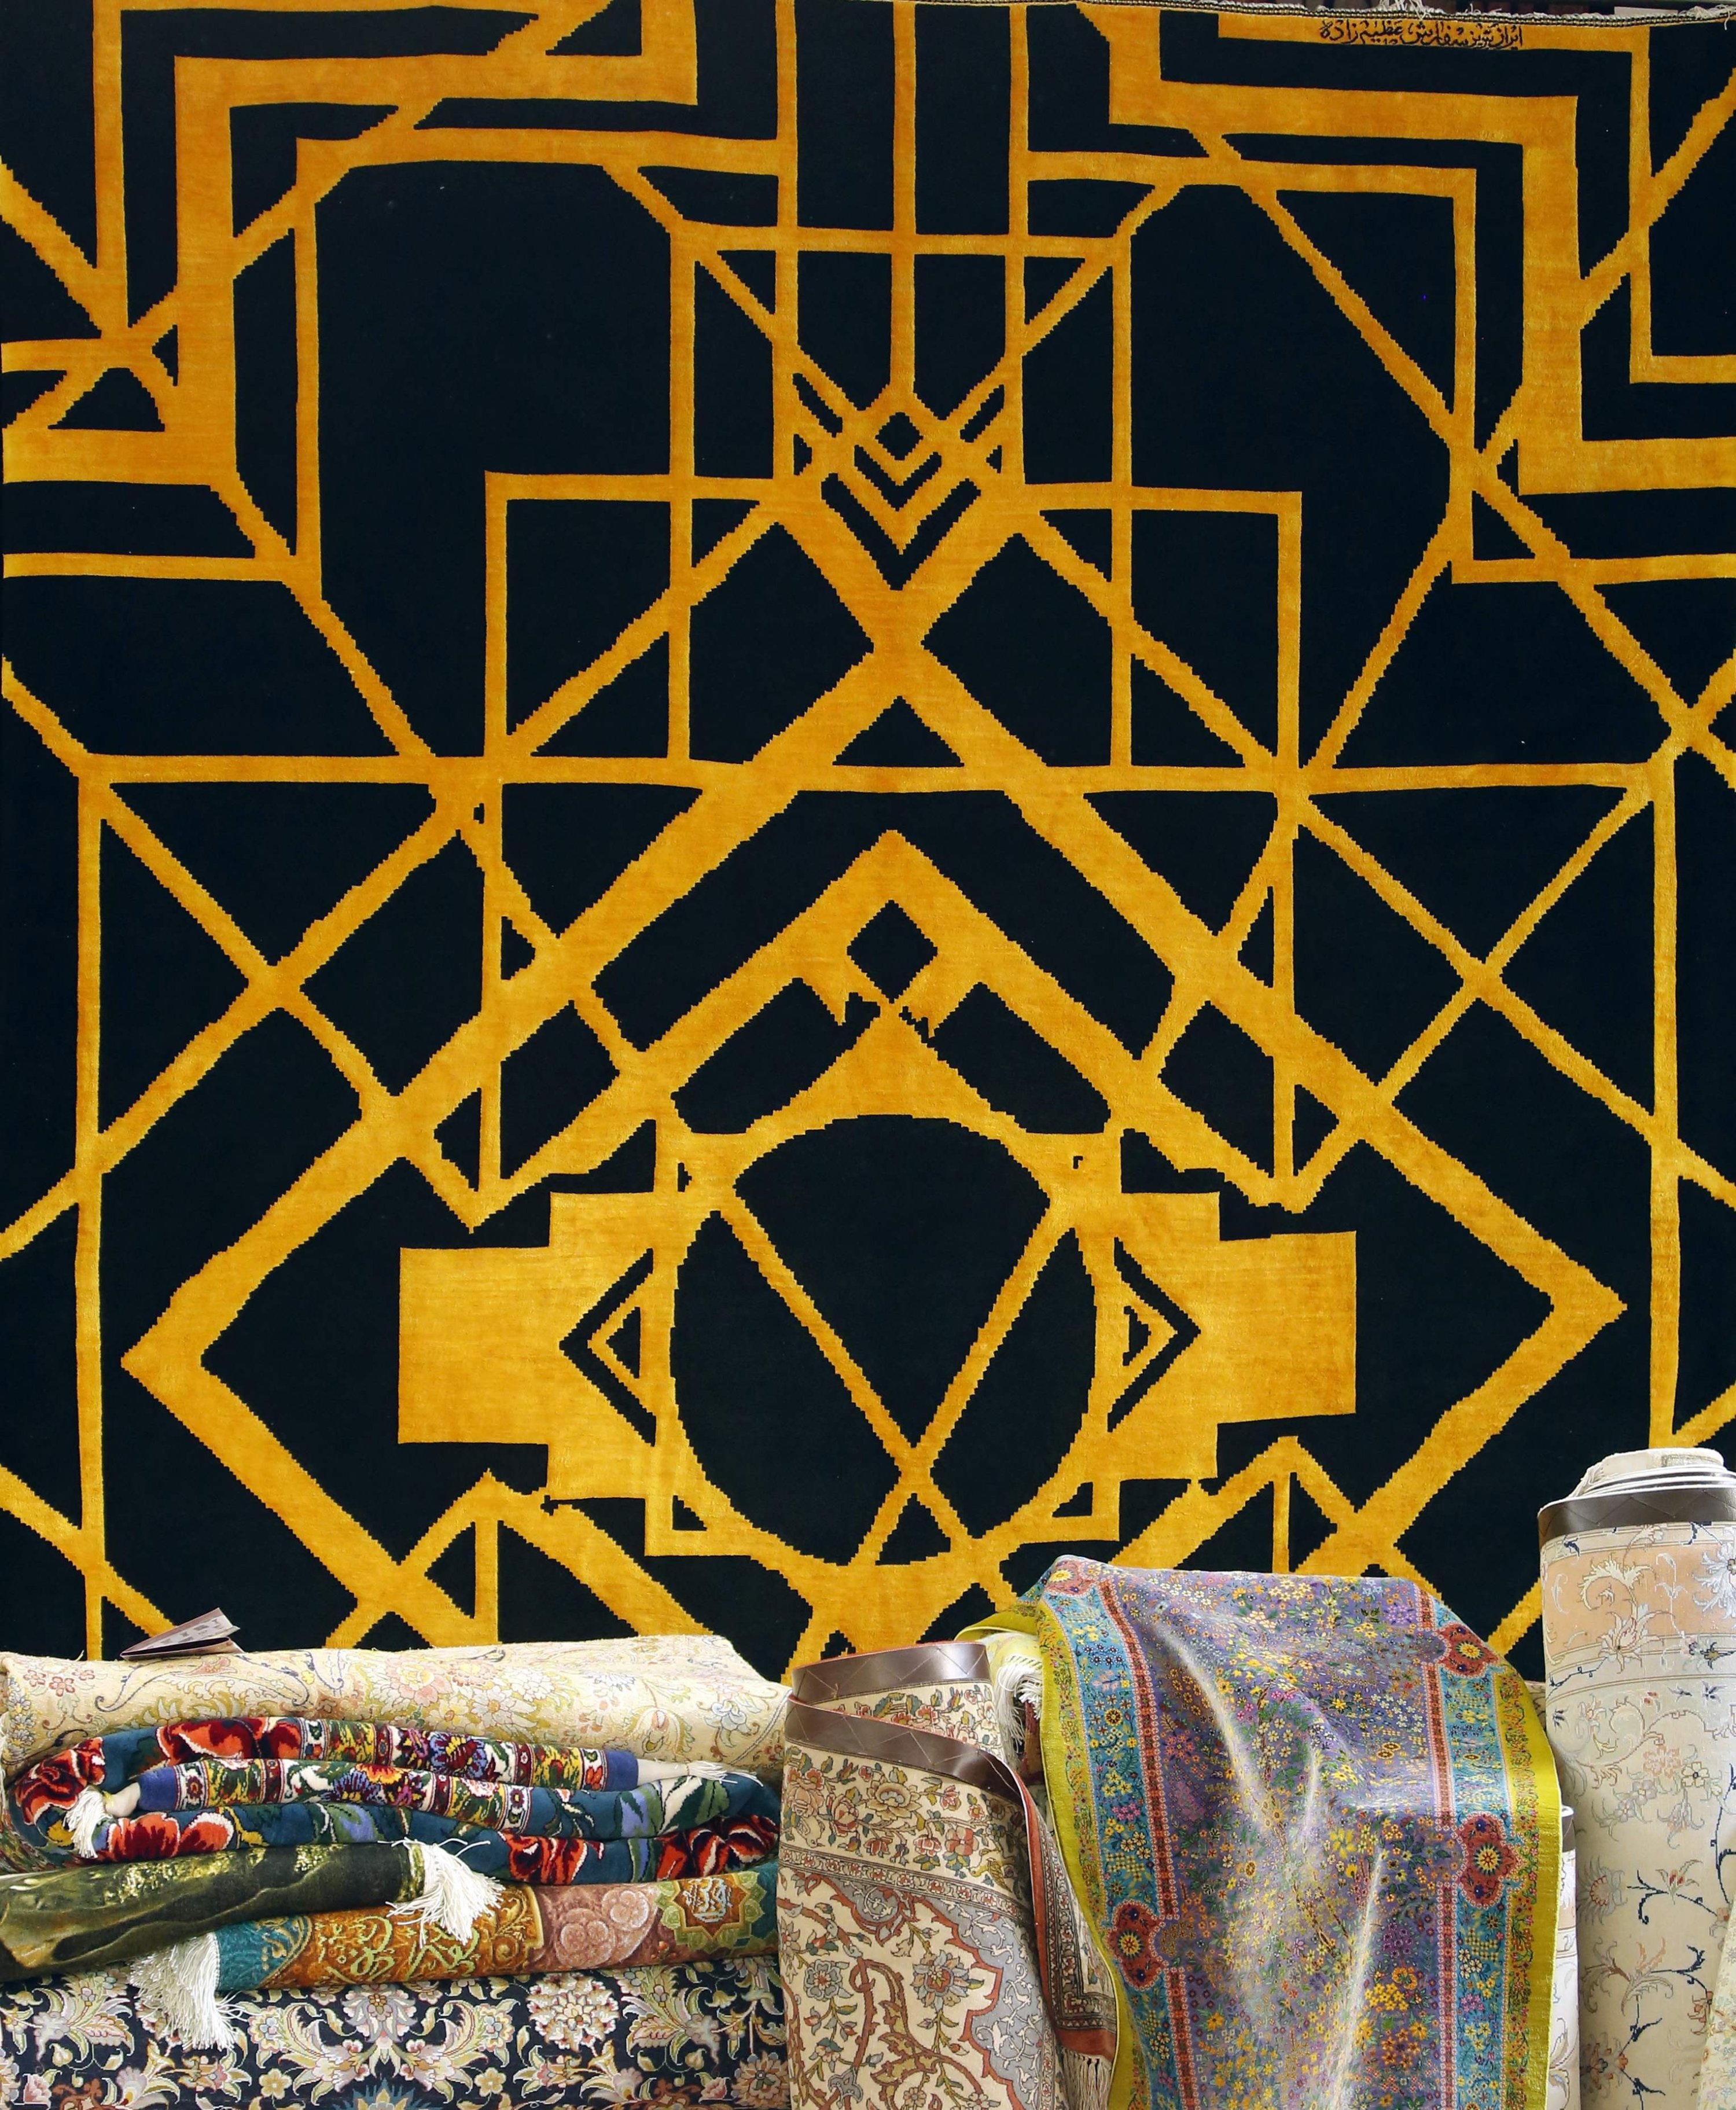 Sutra Tabriz buatan tangan di atas karpet wol dengan desain geometris kontemporer dalam emas digantung di Pameran Karpet Buatan Tangan ke-29 di ibukota Iran, Teheran, 26 Agustus 2022. (AFP)